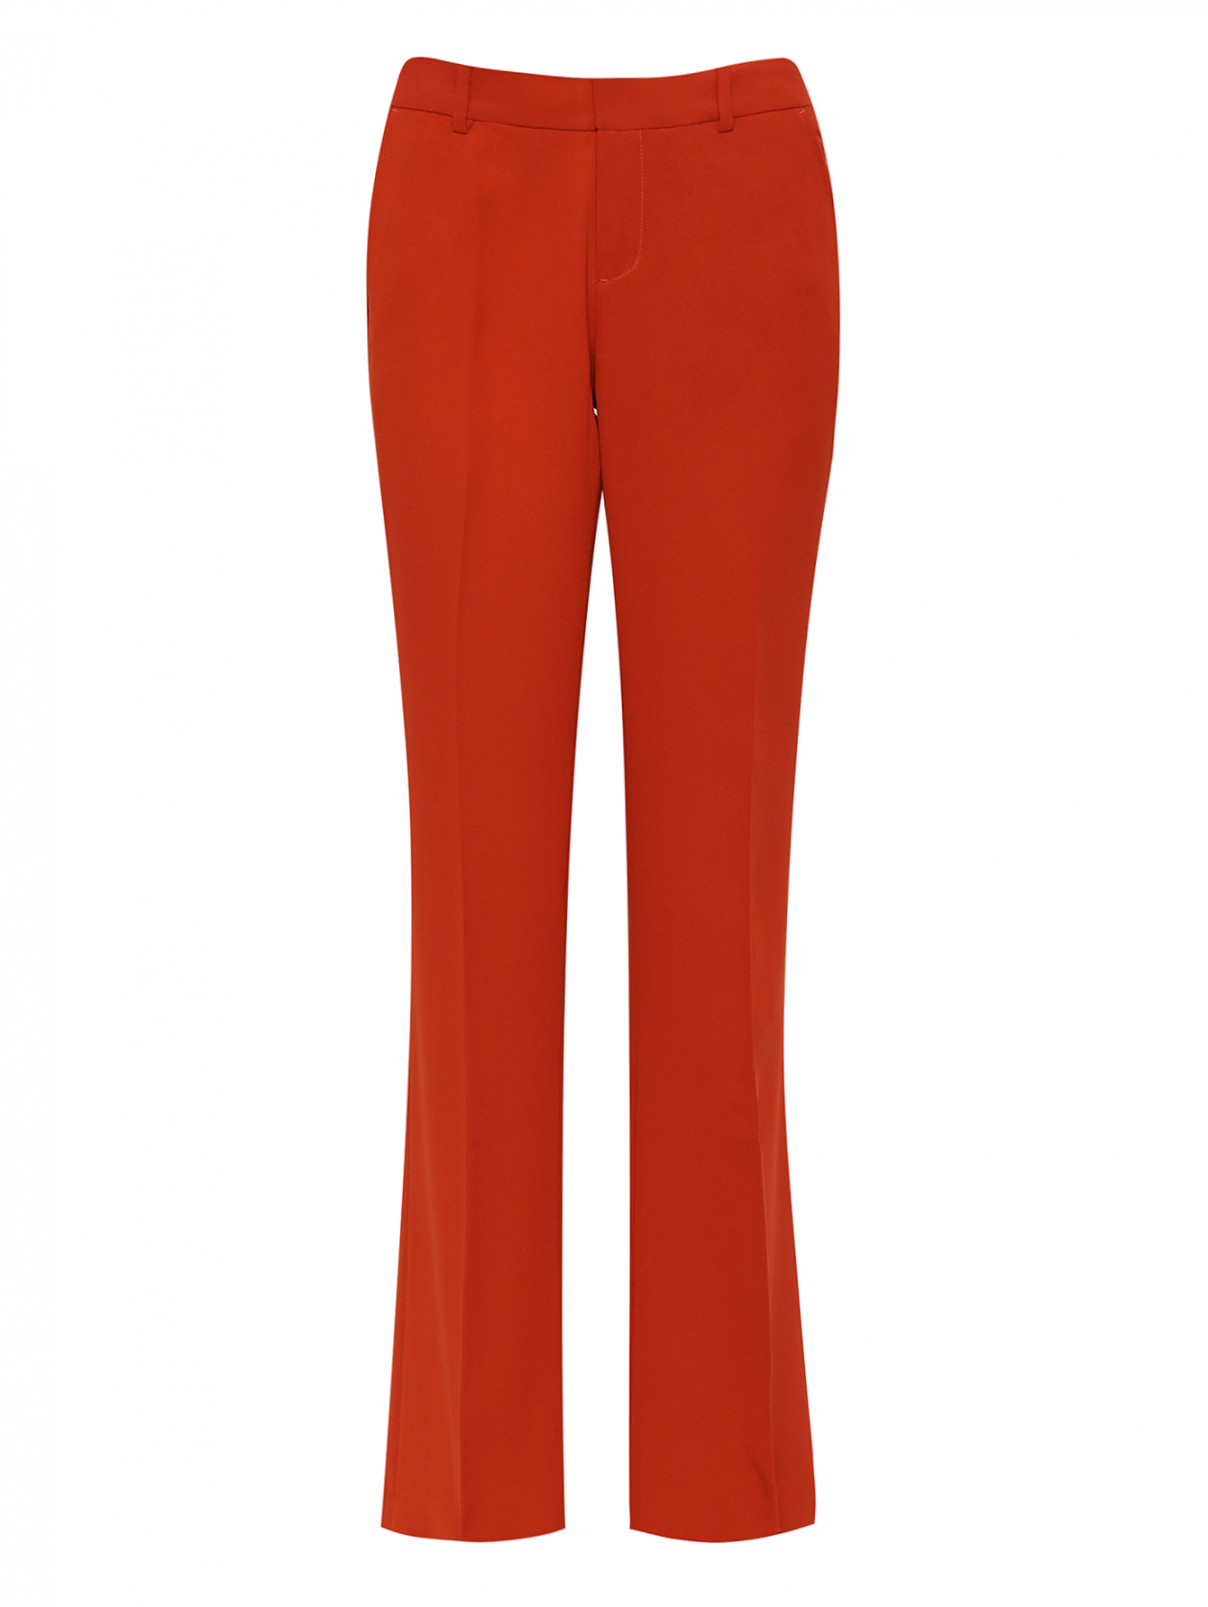 Расклешенные брюки со стрелками Joie  –  Общий вид  – Цвет:  Оранжевый